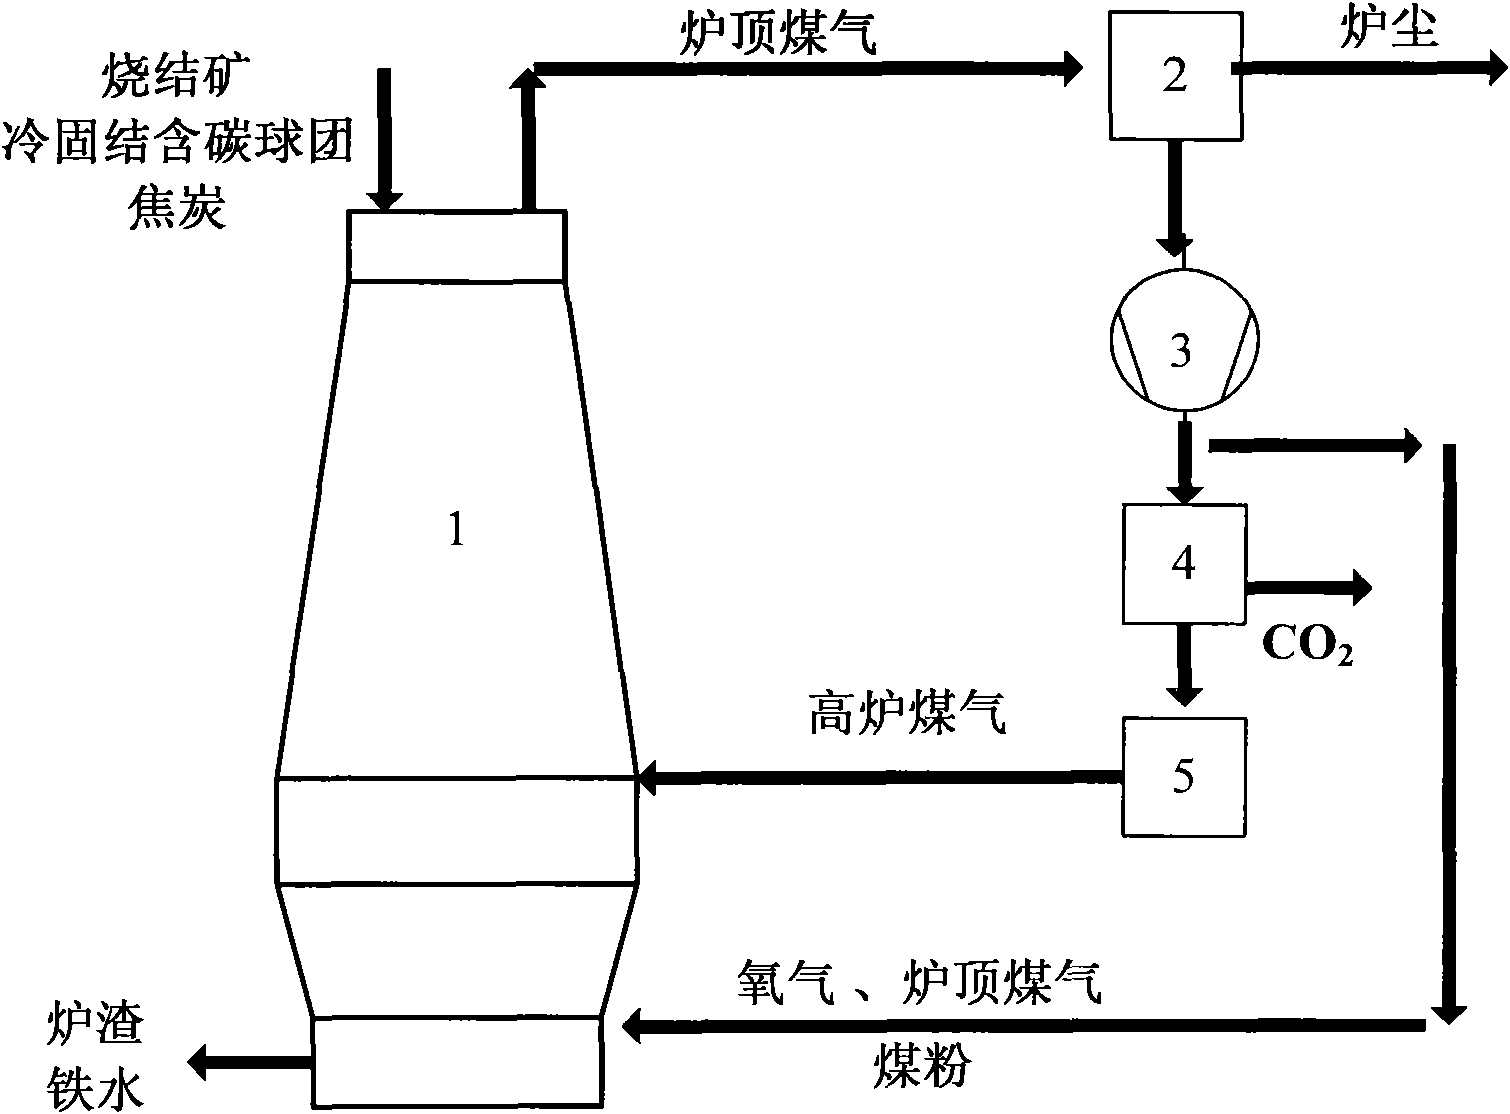 Oxygen blast furnace iron-making method based on cold-bonded carbonic pellet